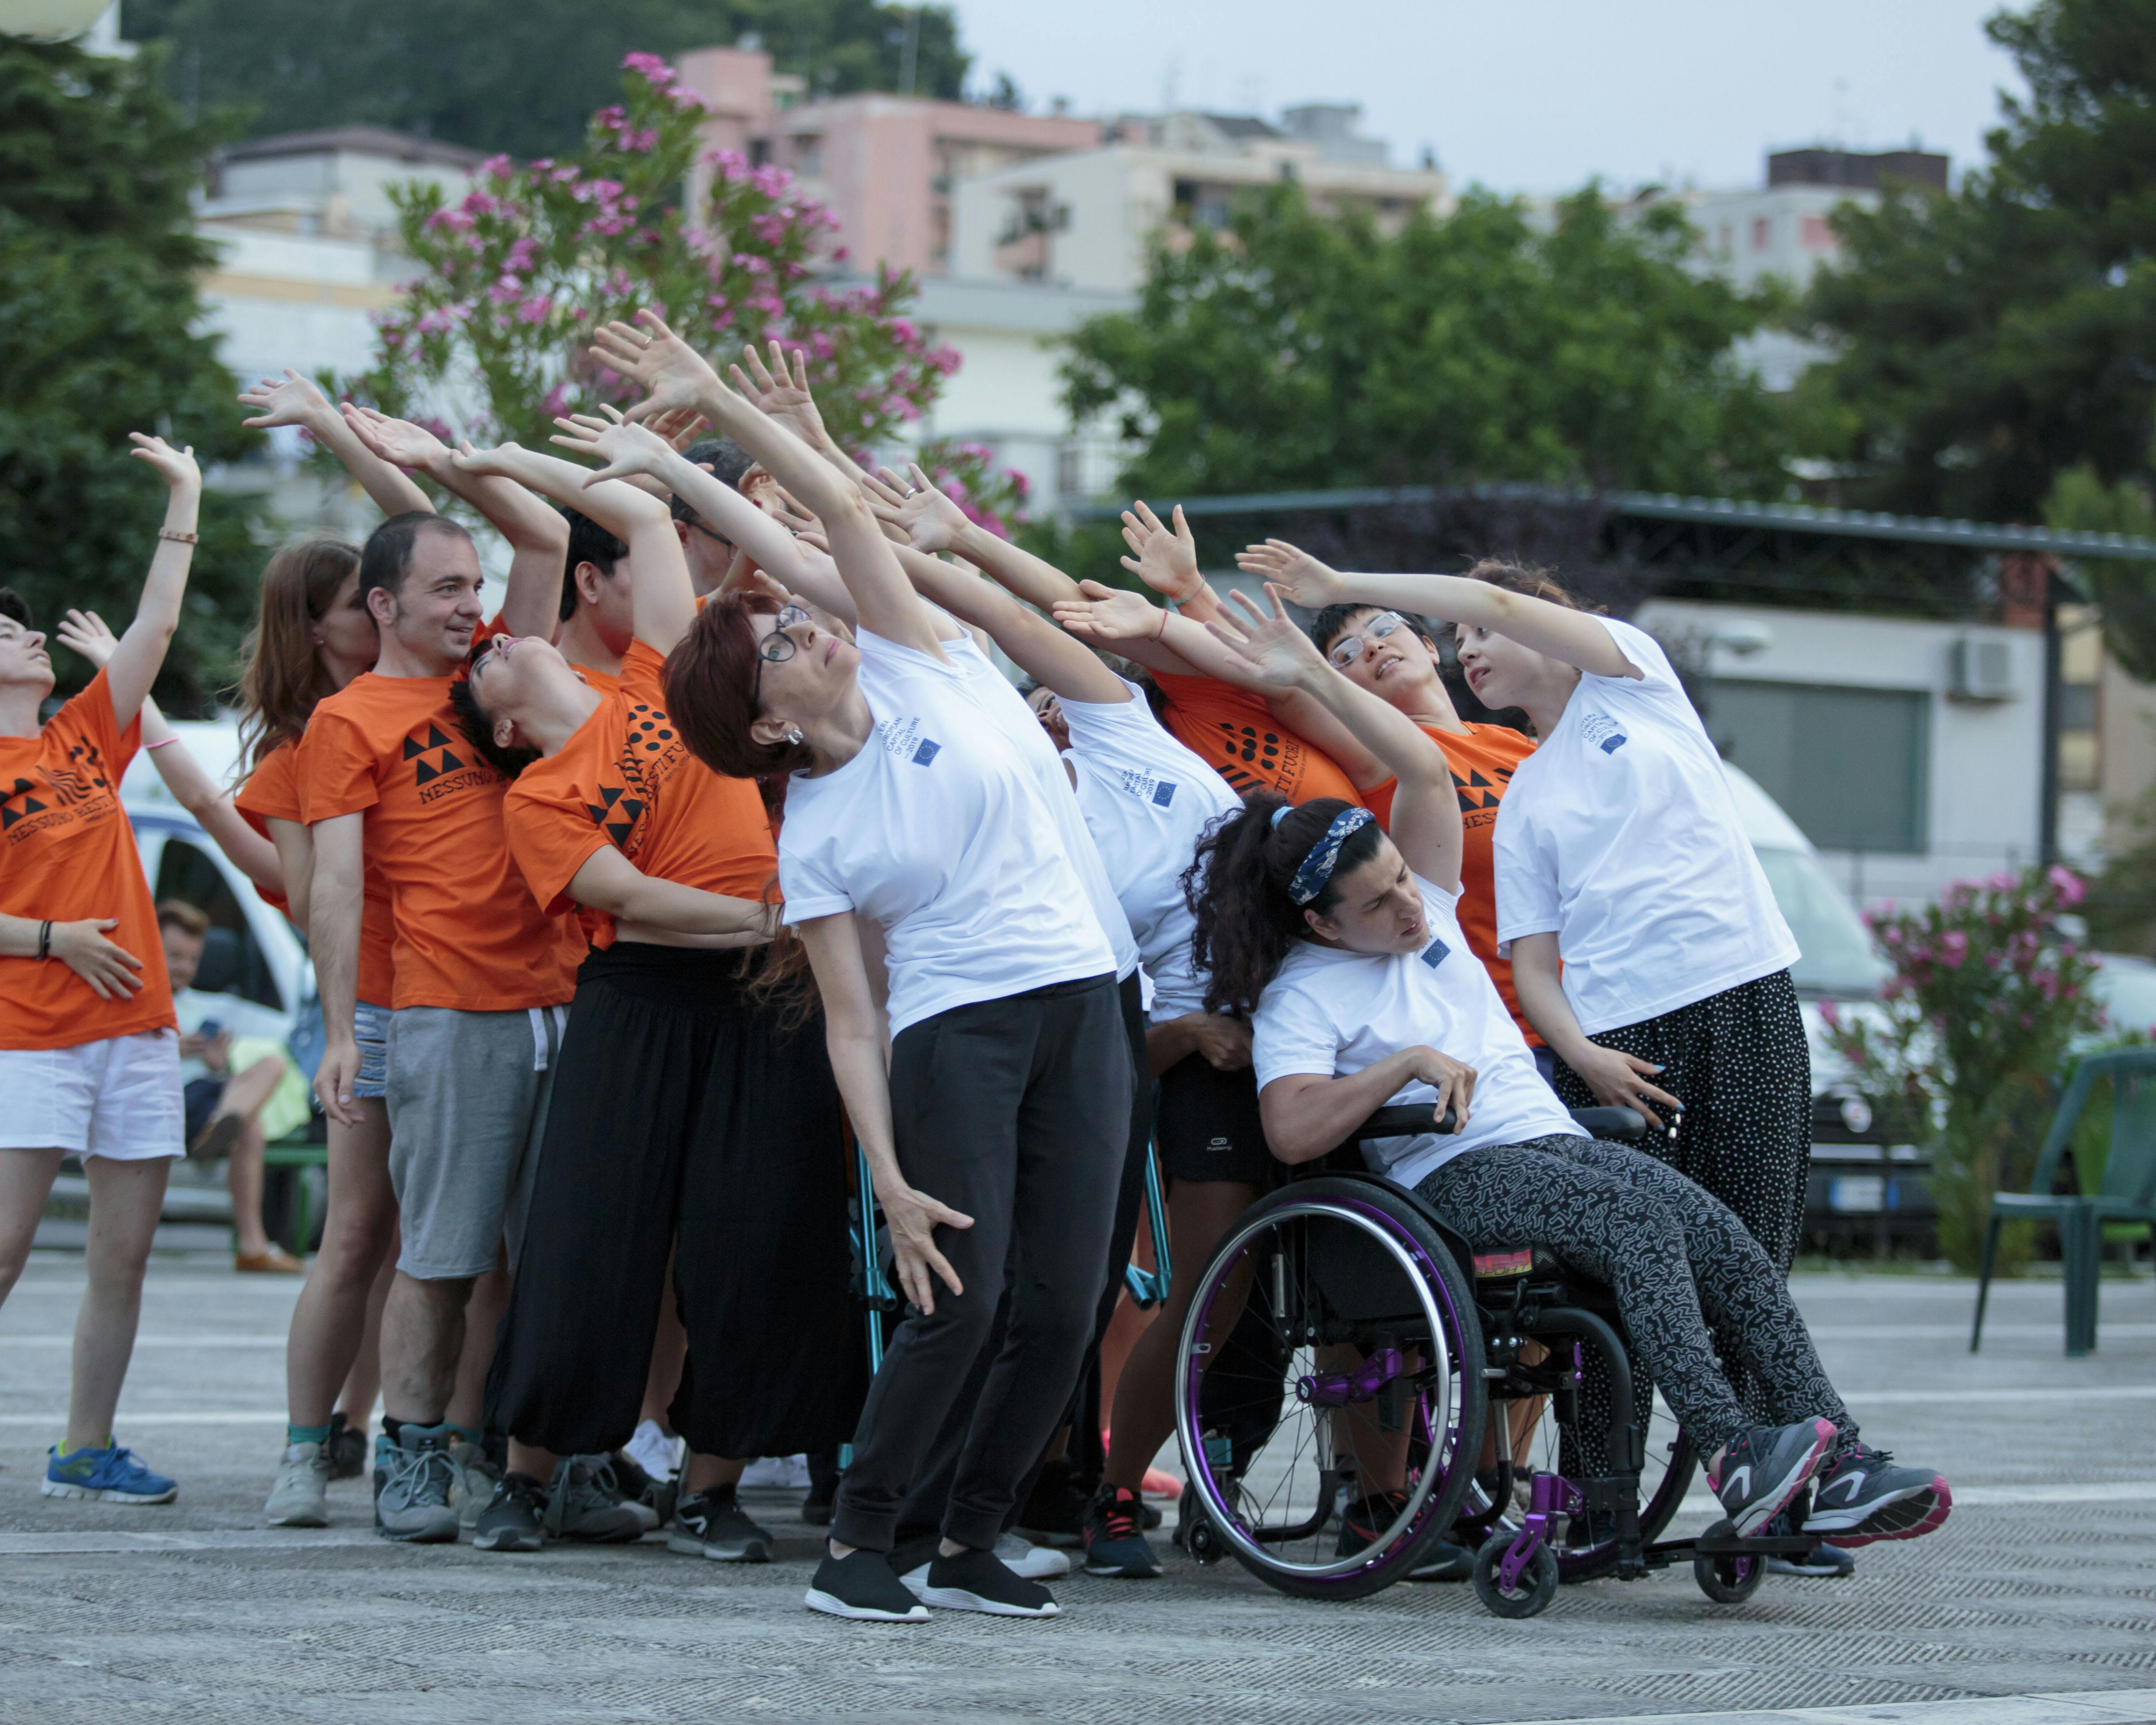 Un gruppo di performer con e senza disabilità durante un'esibizione. Sollevano un braccio verso l'alto inclinando il busto leggermente indietro.